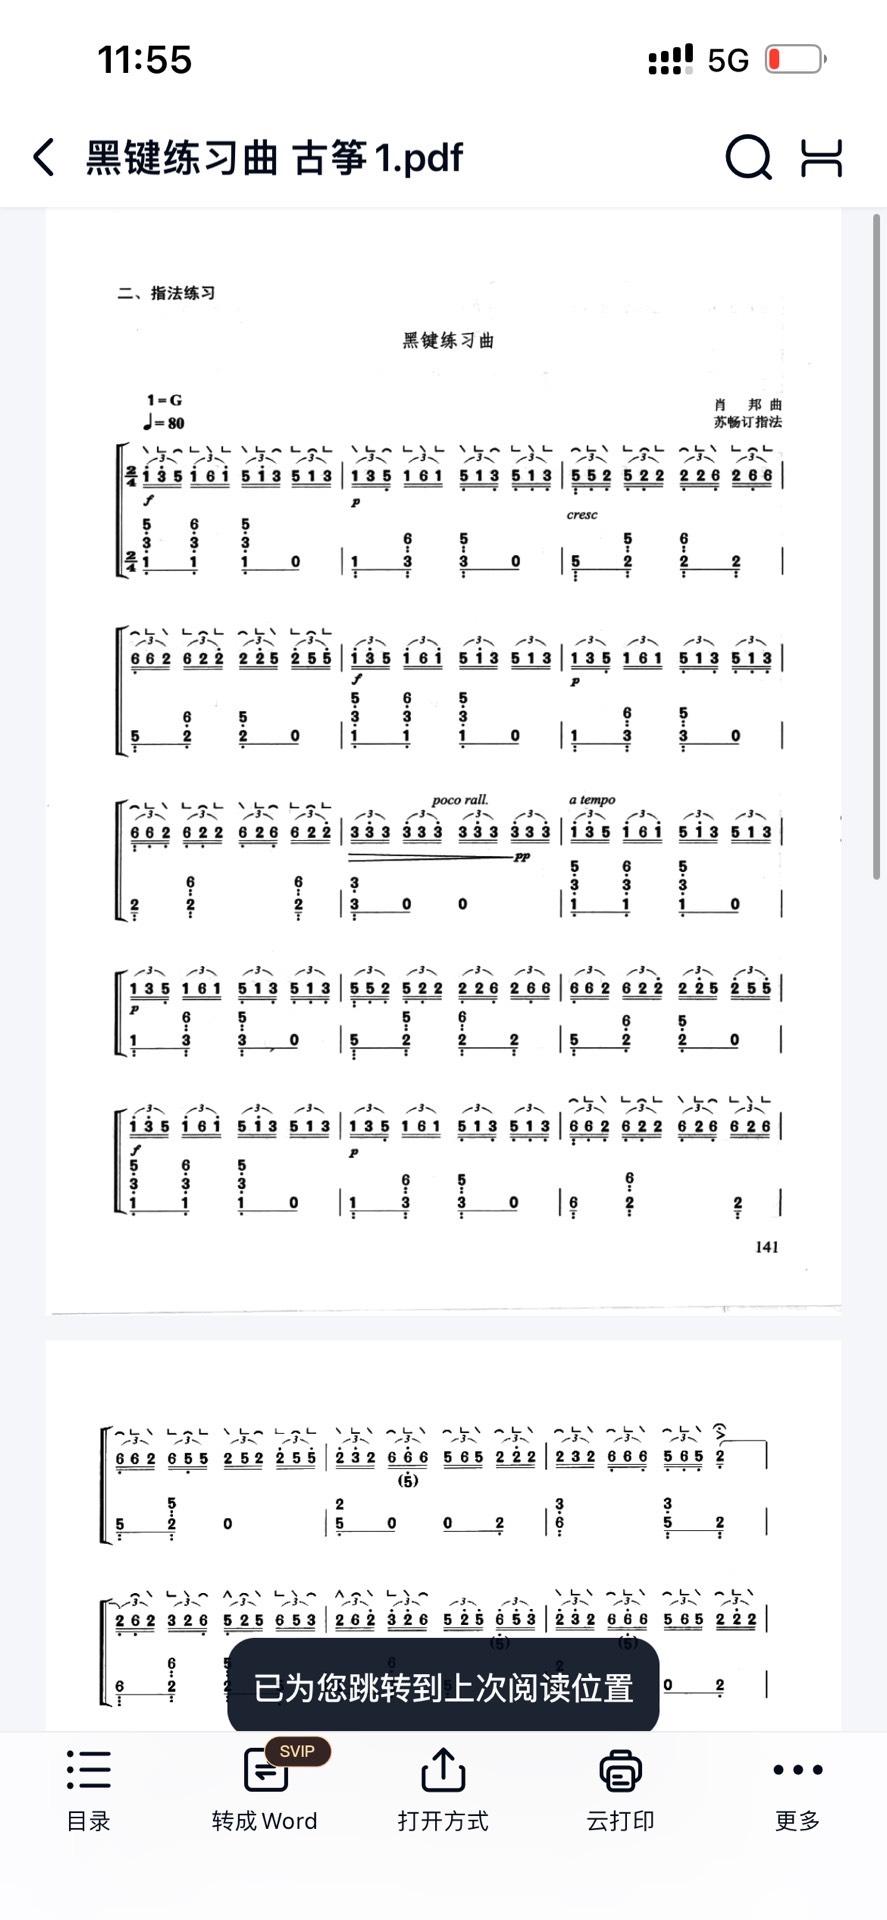 筝曲黑键练习曲(简谱  pdf版电子版)

有需要可以直接拍,看到就会发哦